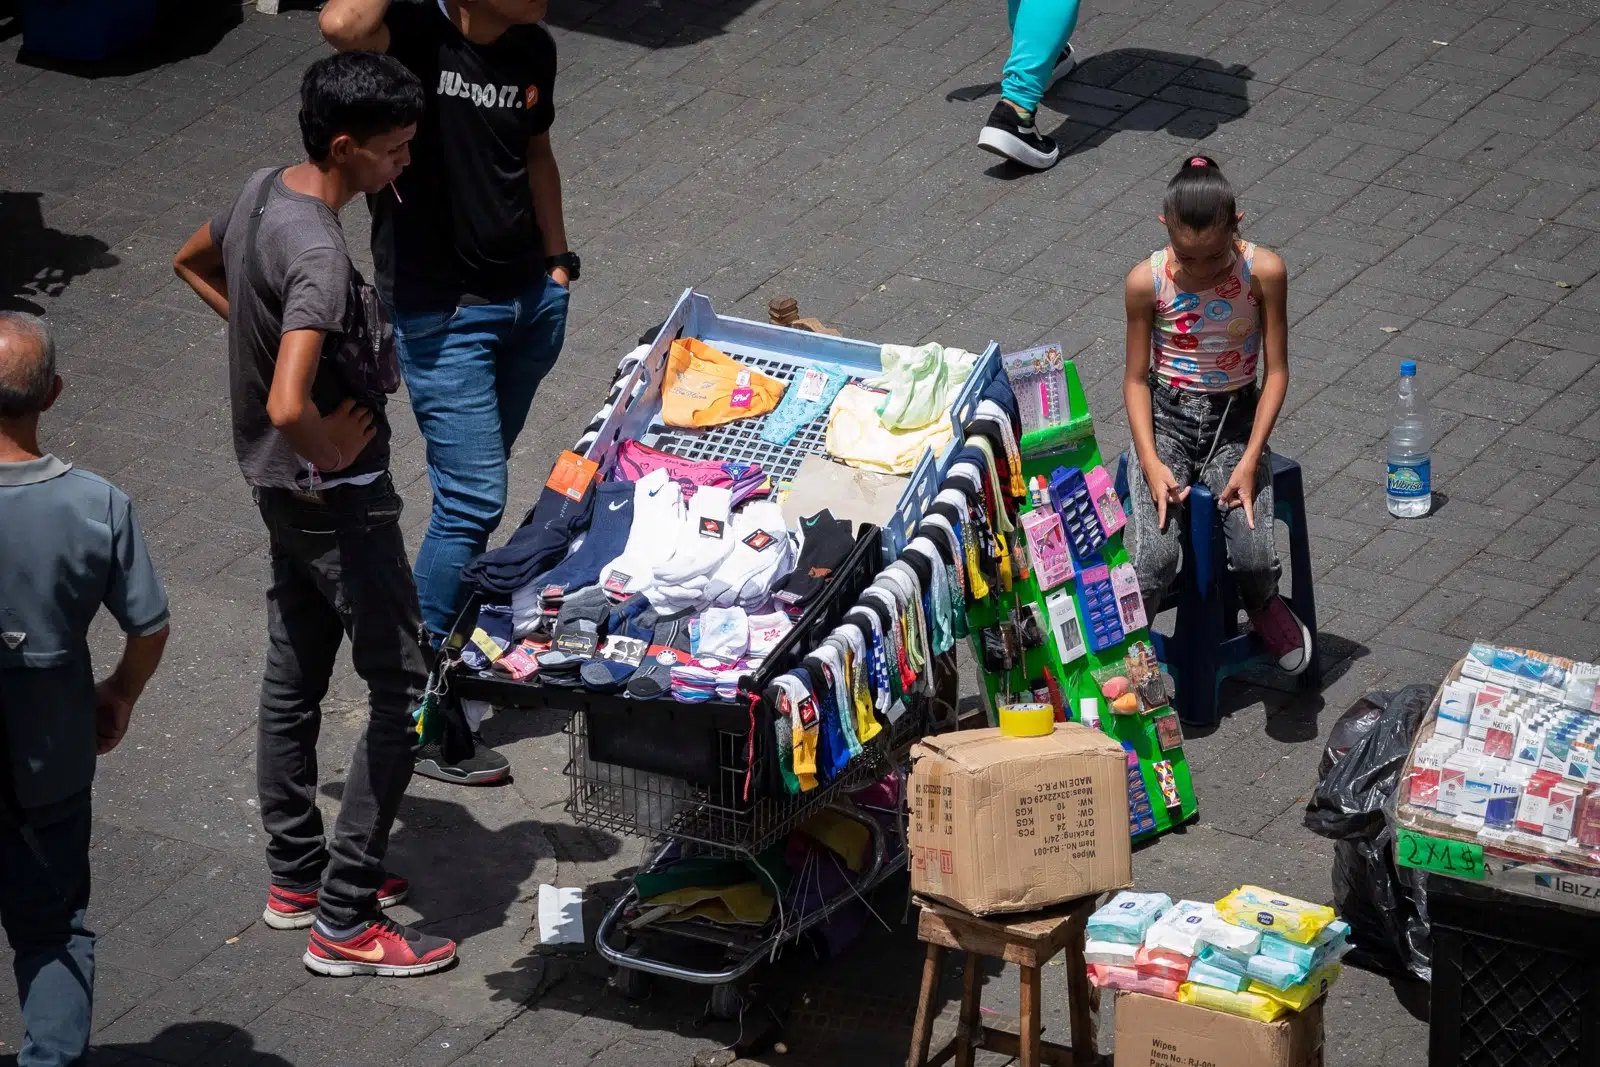 adolescentes trabajan para medio completar canasta familiar laverdaddemonagas.com trabajo infantil venezuela foto efe.jpg